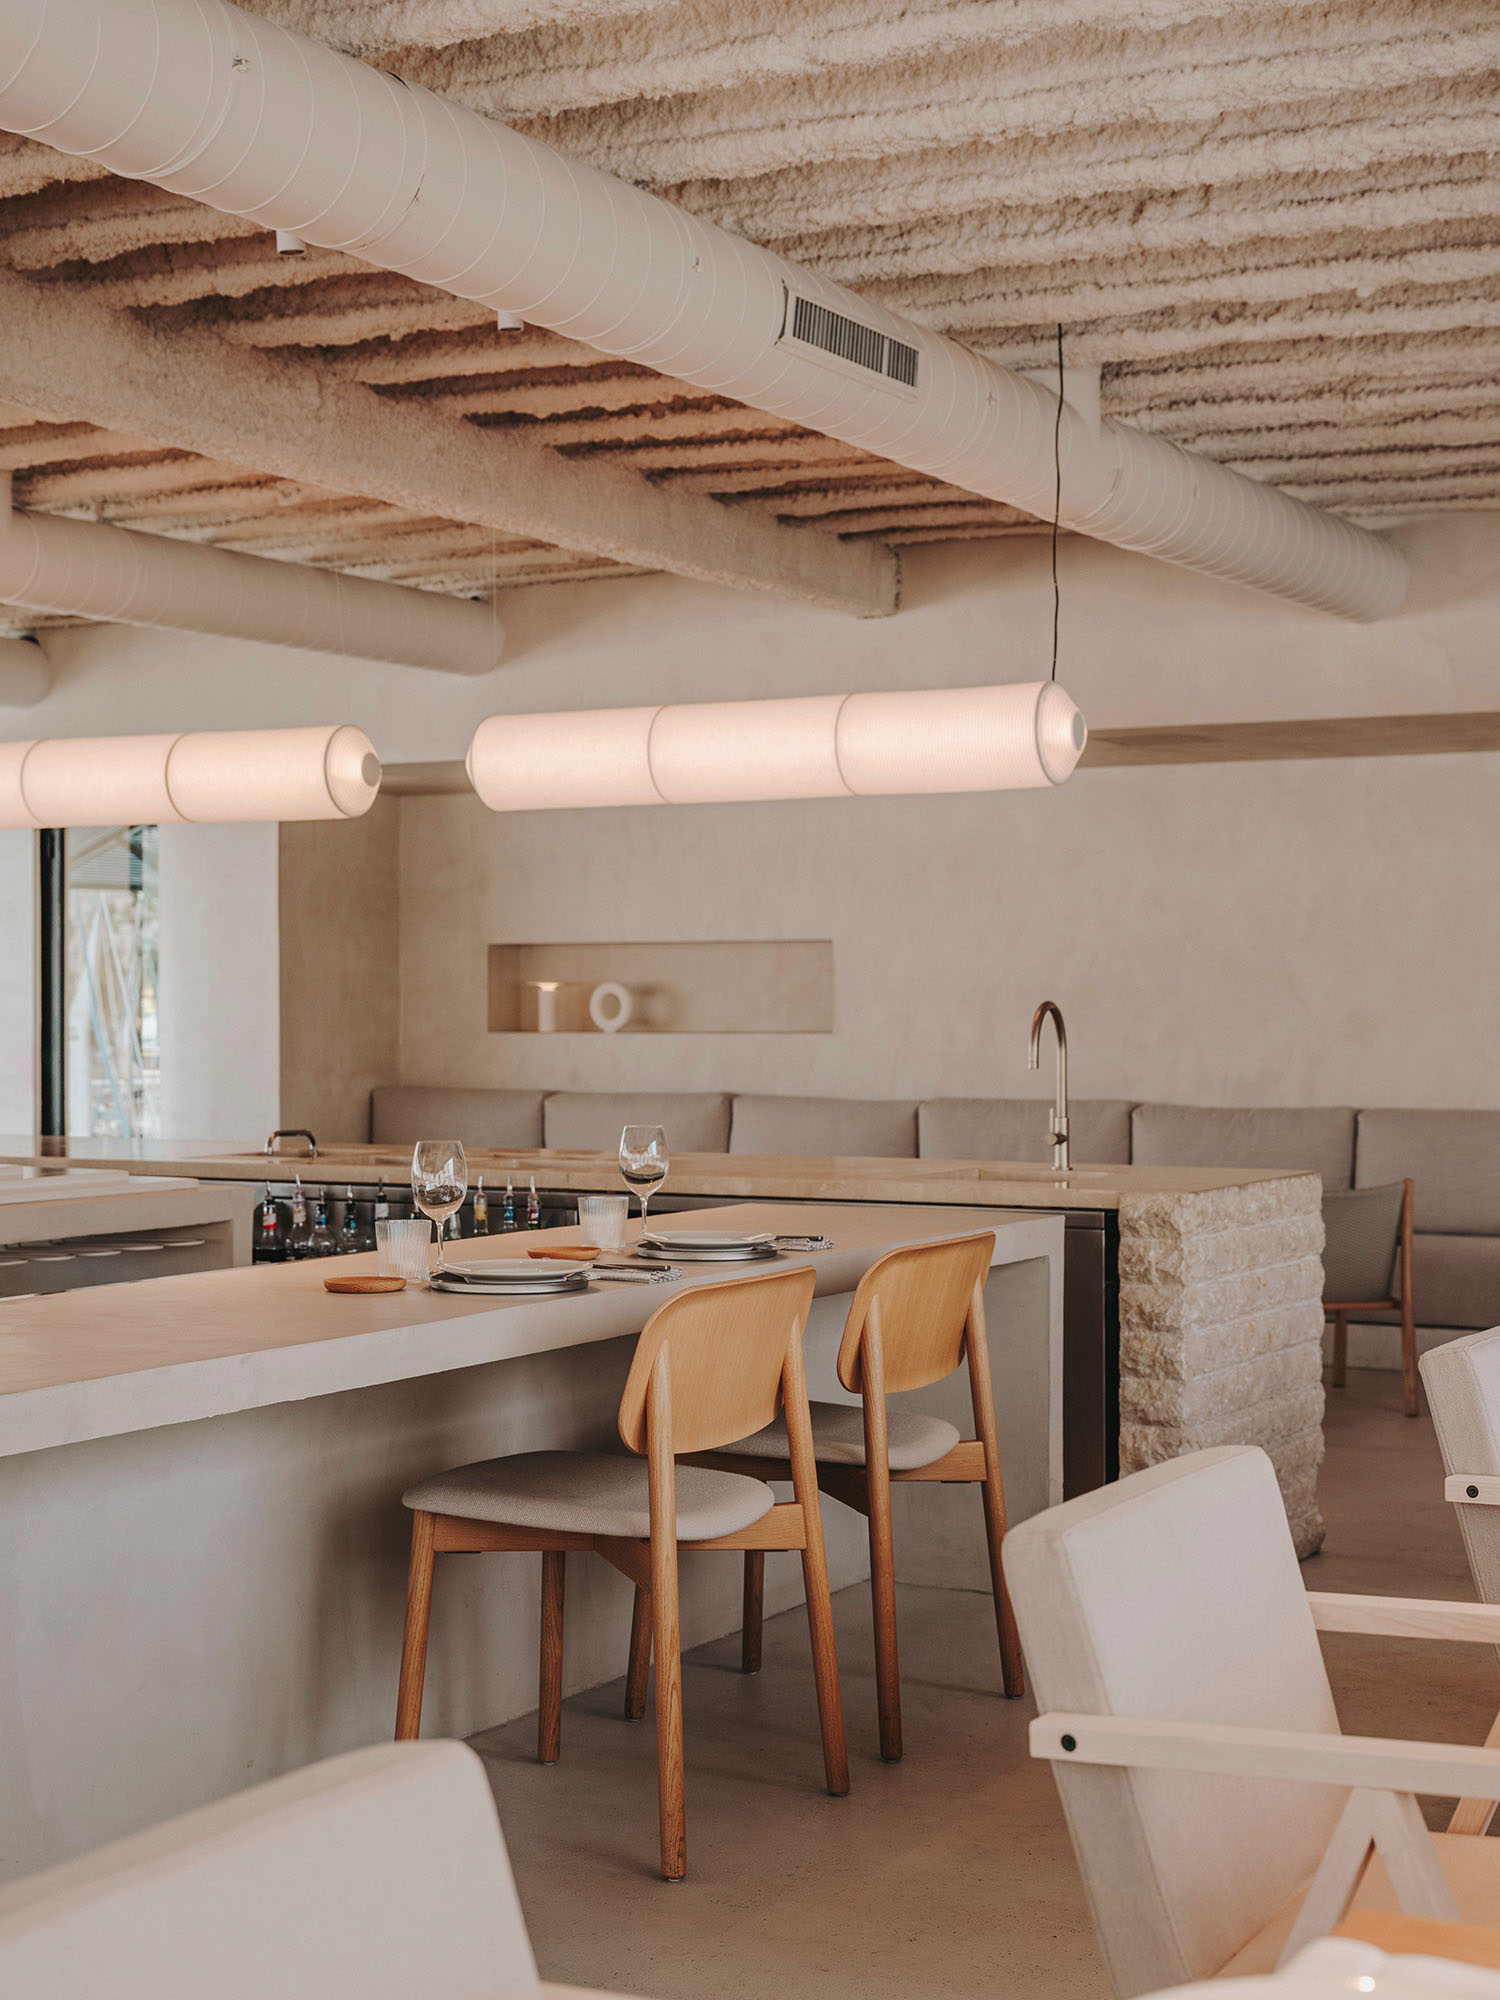 餐廳設計,Isern Serra Studio,休閑餐廳設計,巴塞羅那,現代風格餐廳設計案例,中性美學,海鮮酒吧餐廳